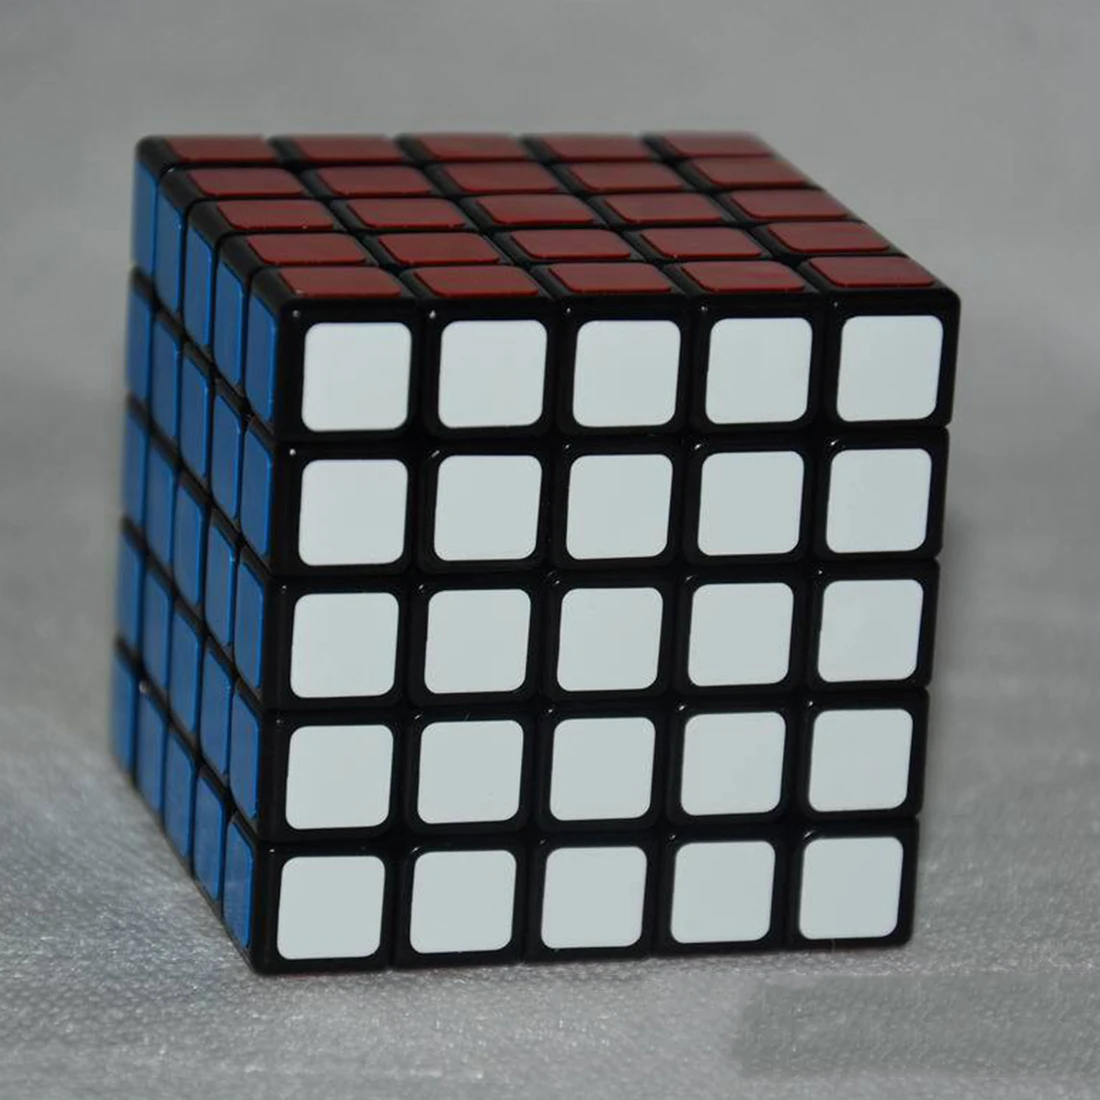 Shengshou Linglong 5x5 квадратная форма Скорость волшебный куб головоломка для детей детские развивающие игрушки